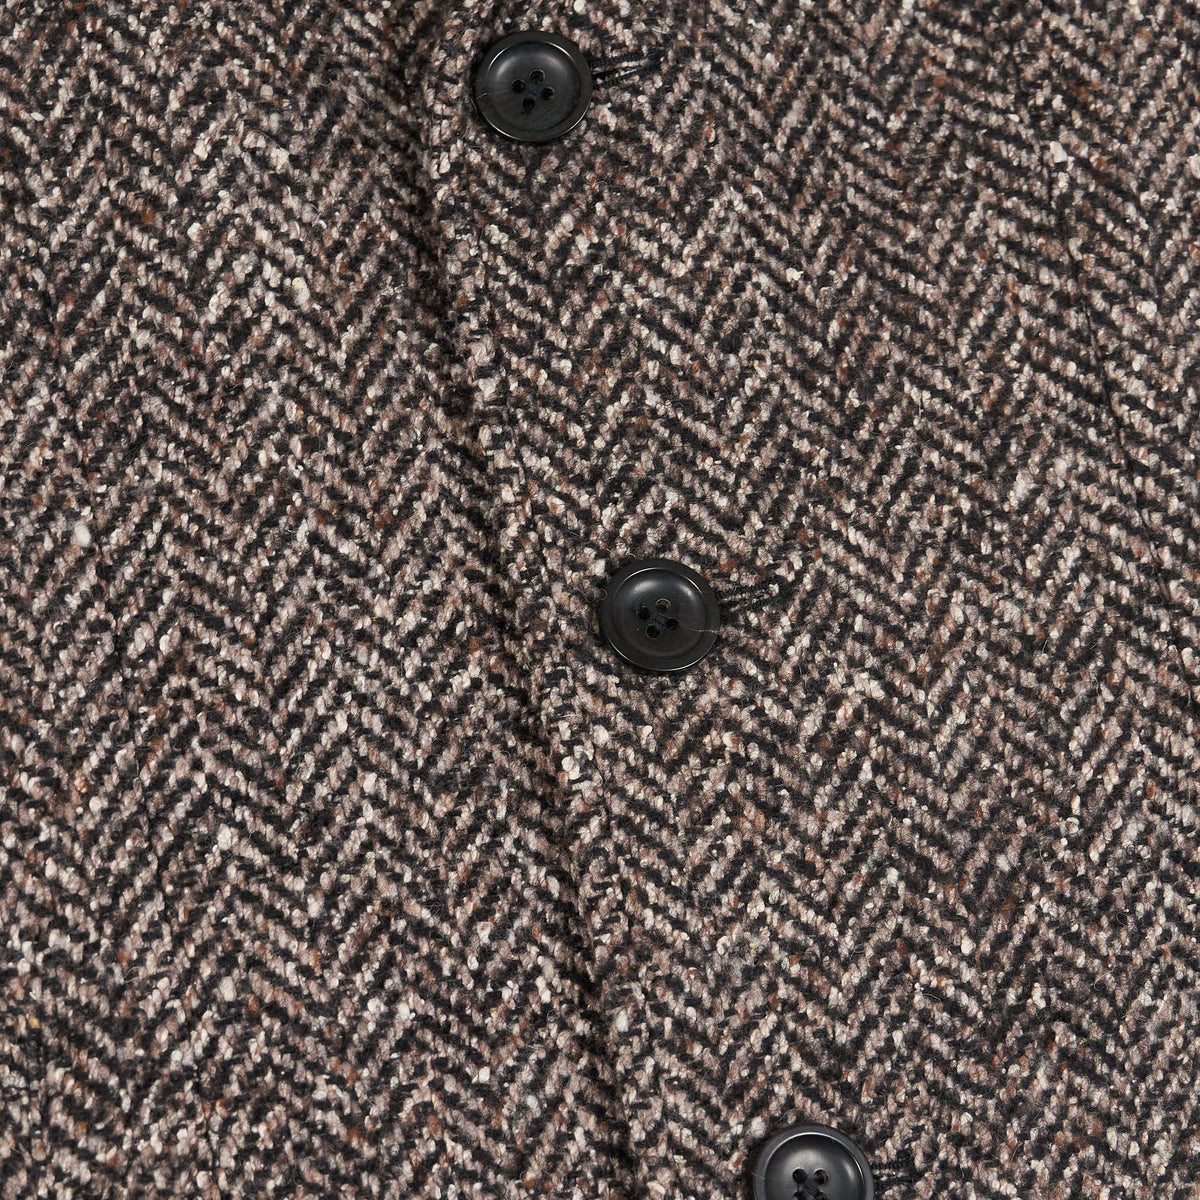 Palto Medium Length  Herringbone Wool Coat